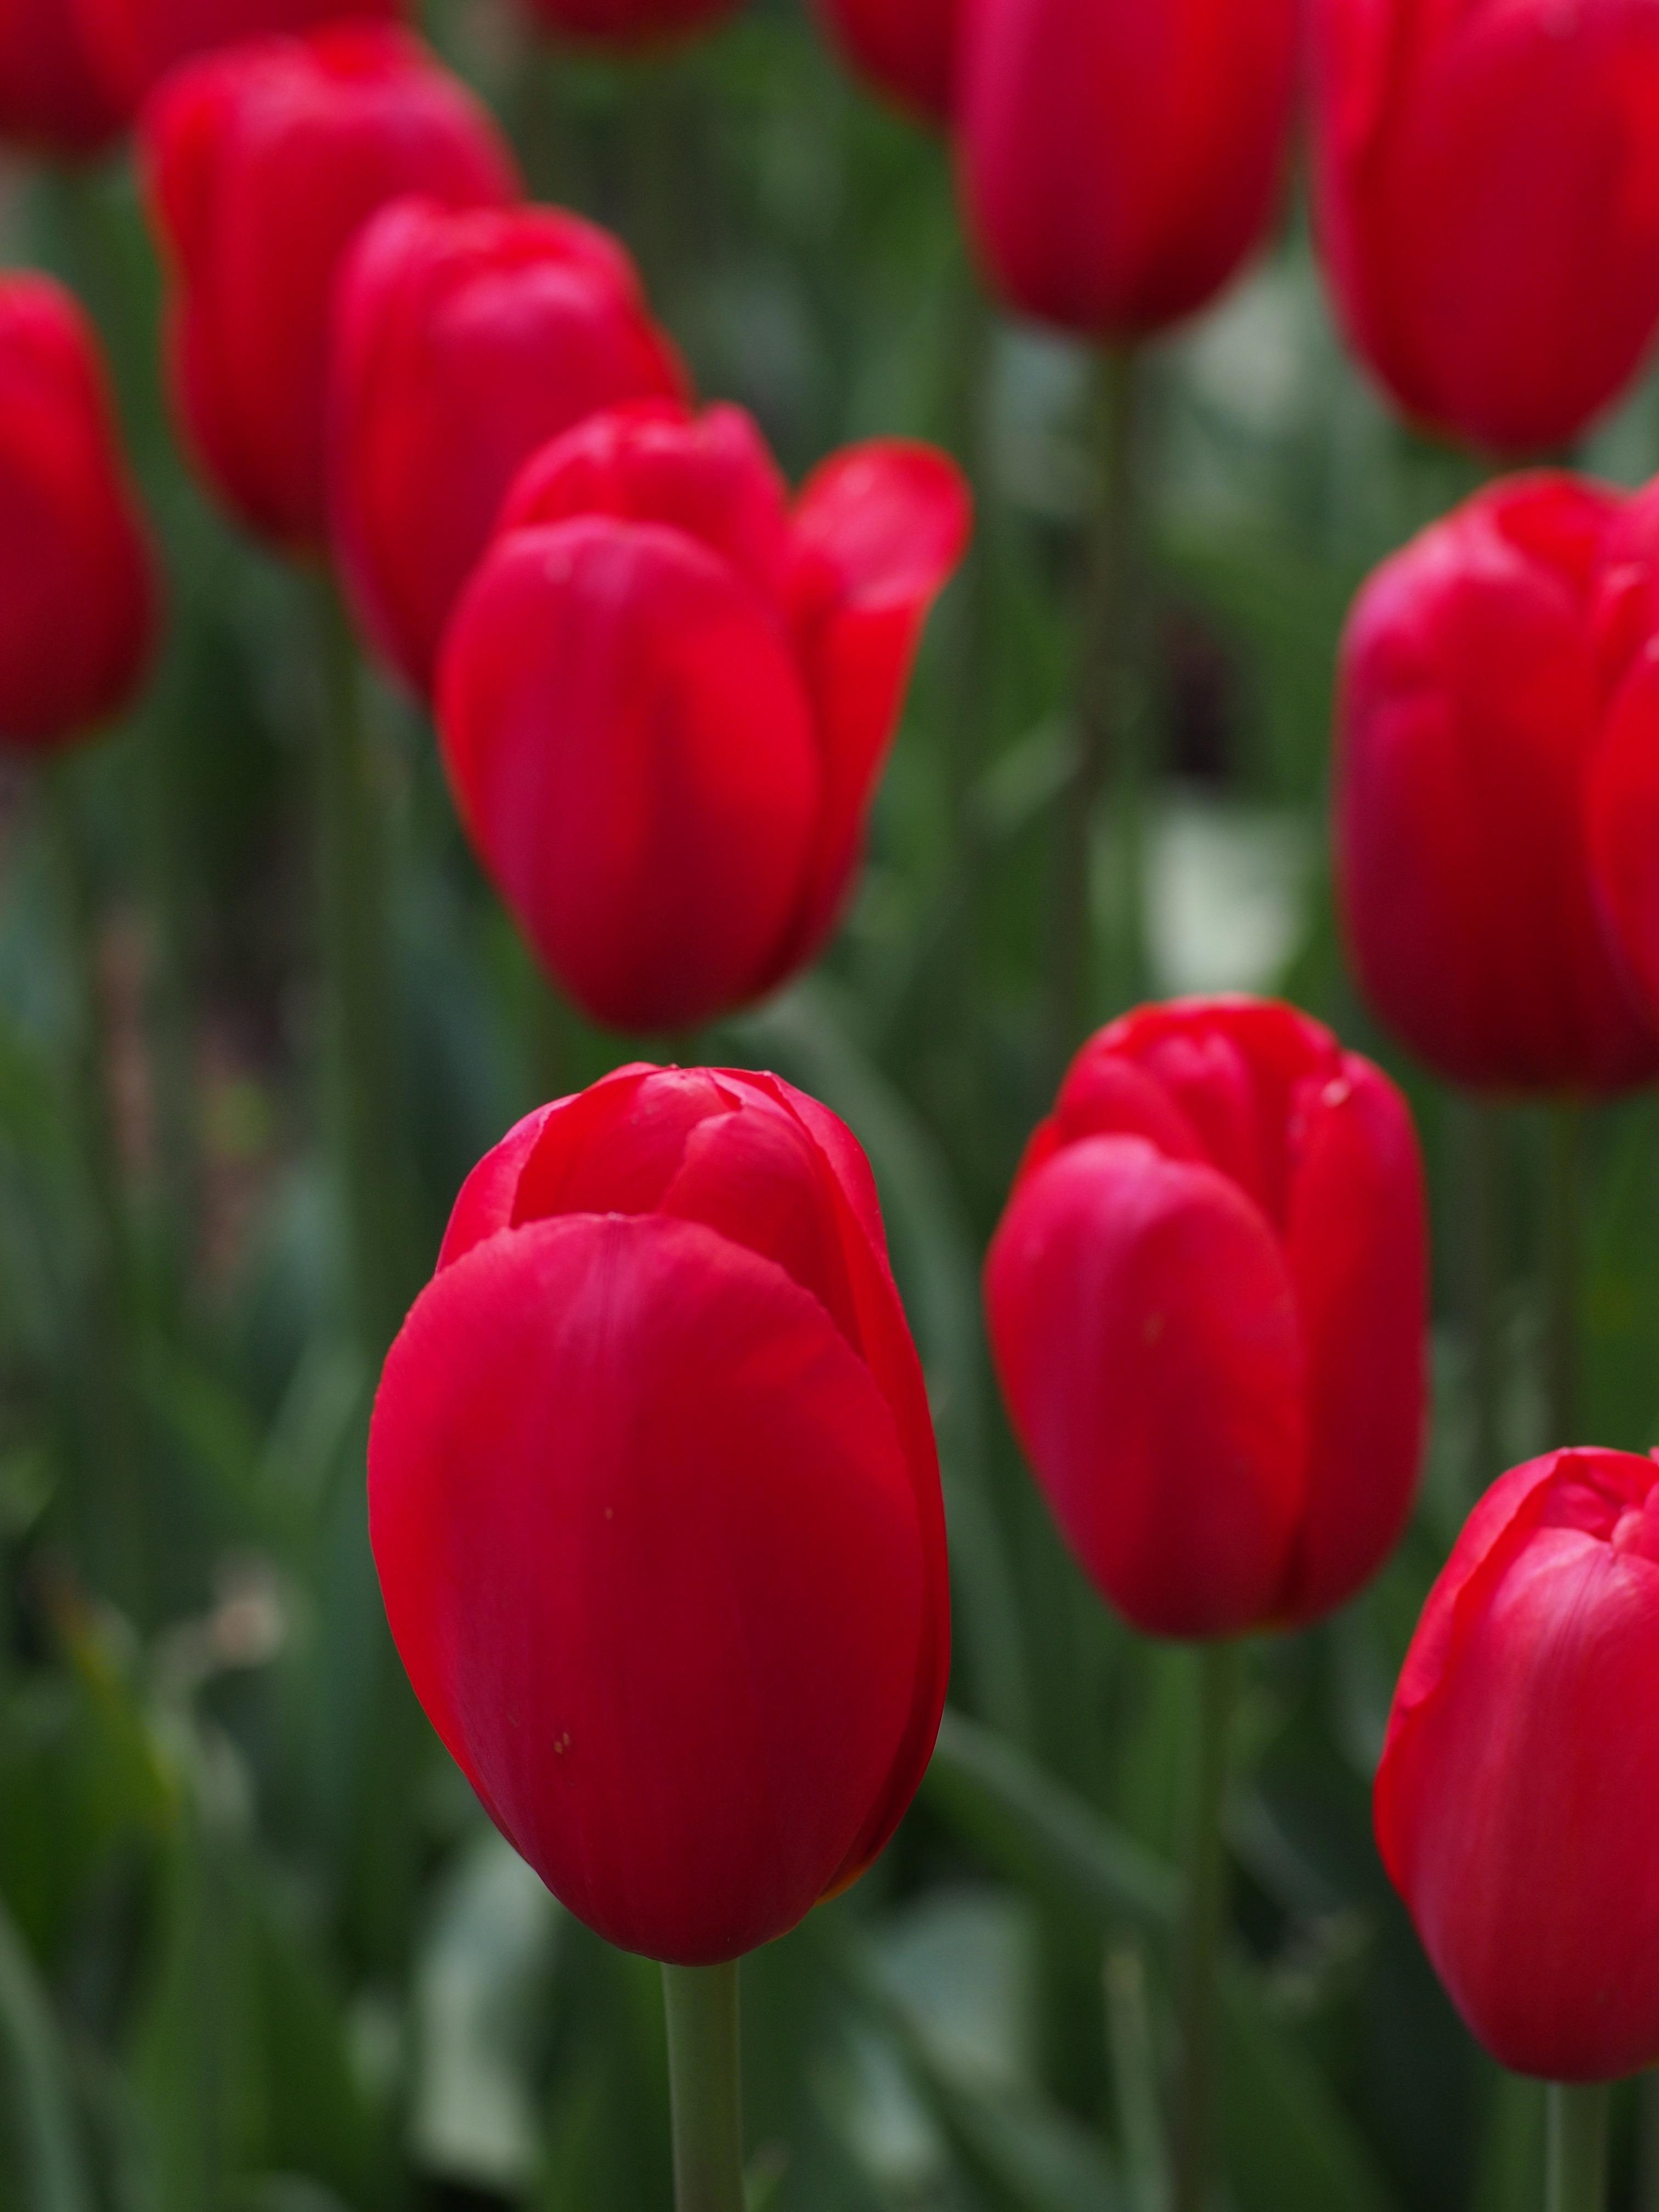 Tulip Triumph 'Red Present' - Tulip from Leo Berbee Bulb Company